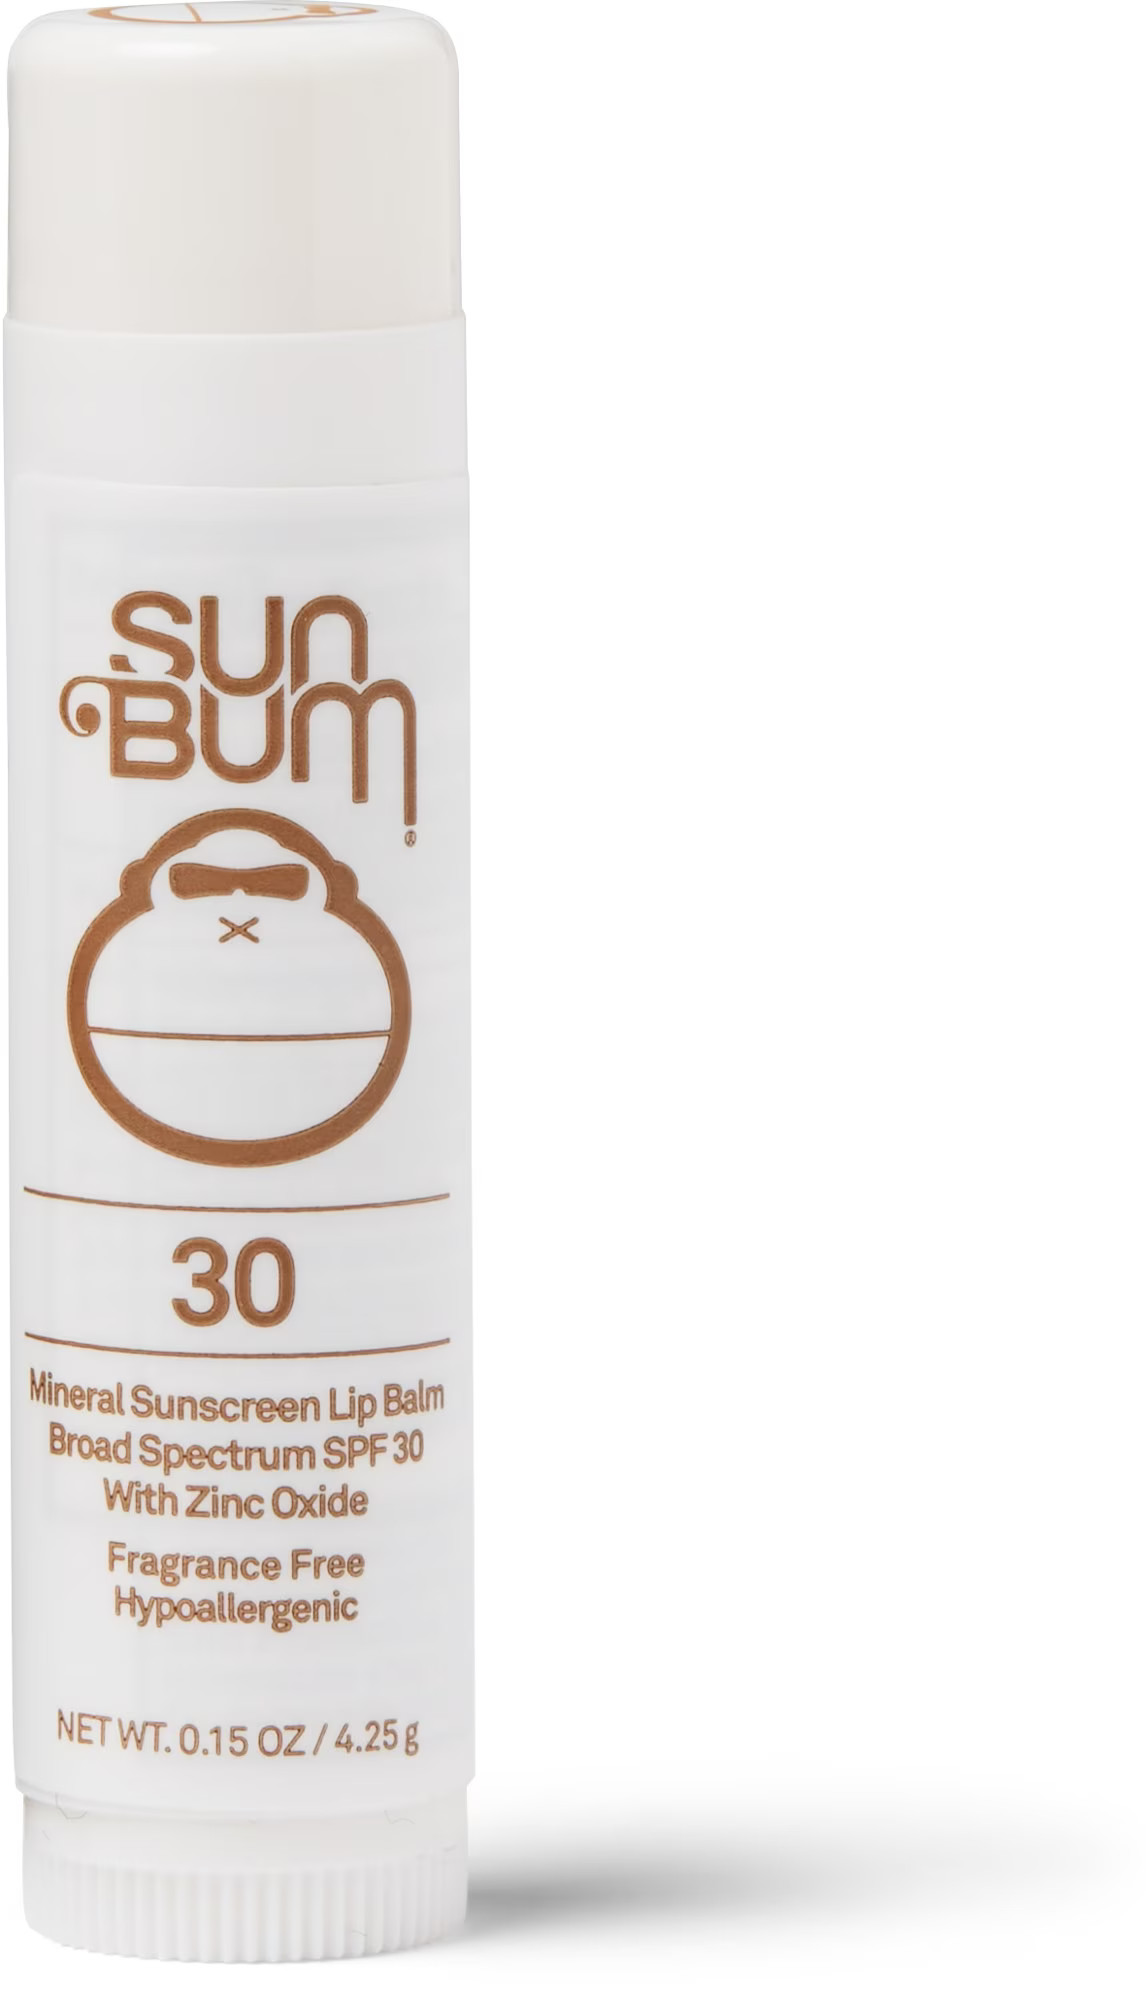 Sun Bum SPF 30 Sunscreen Lip Balm.jpg